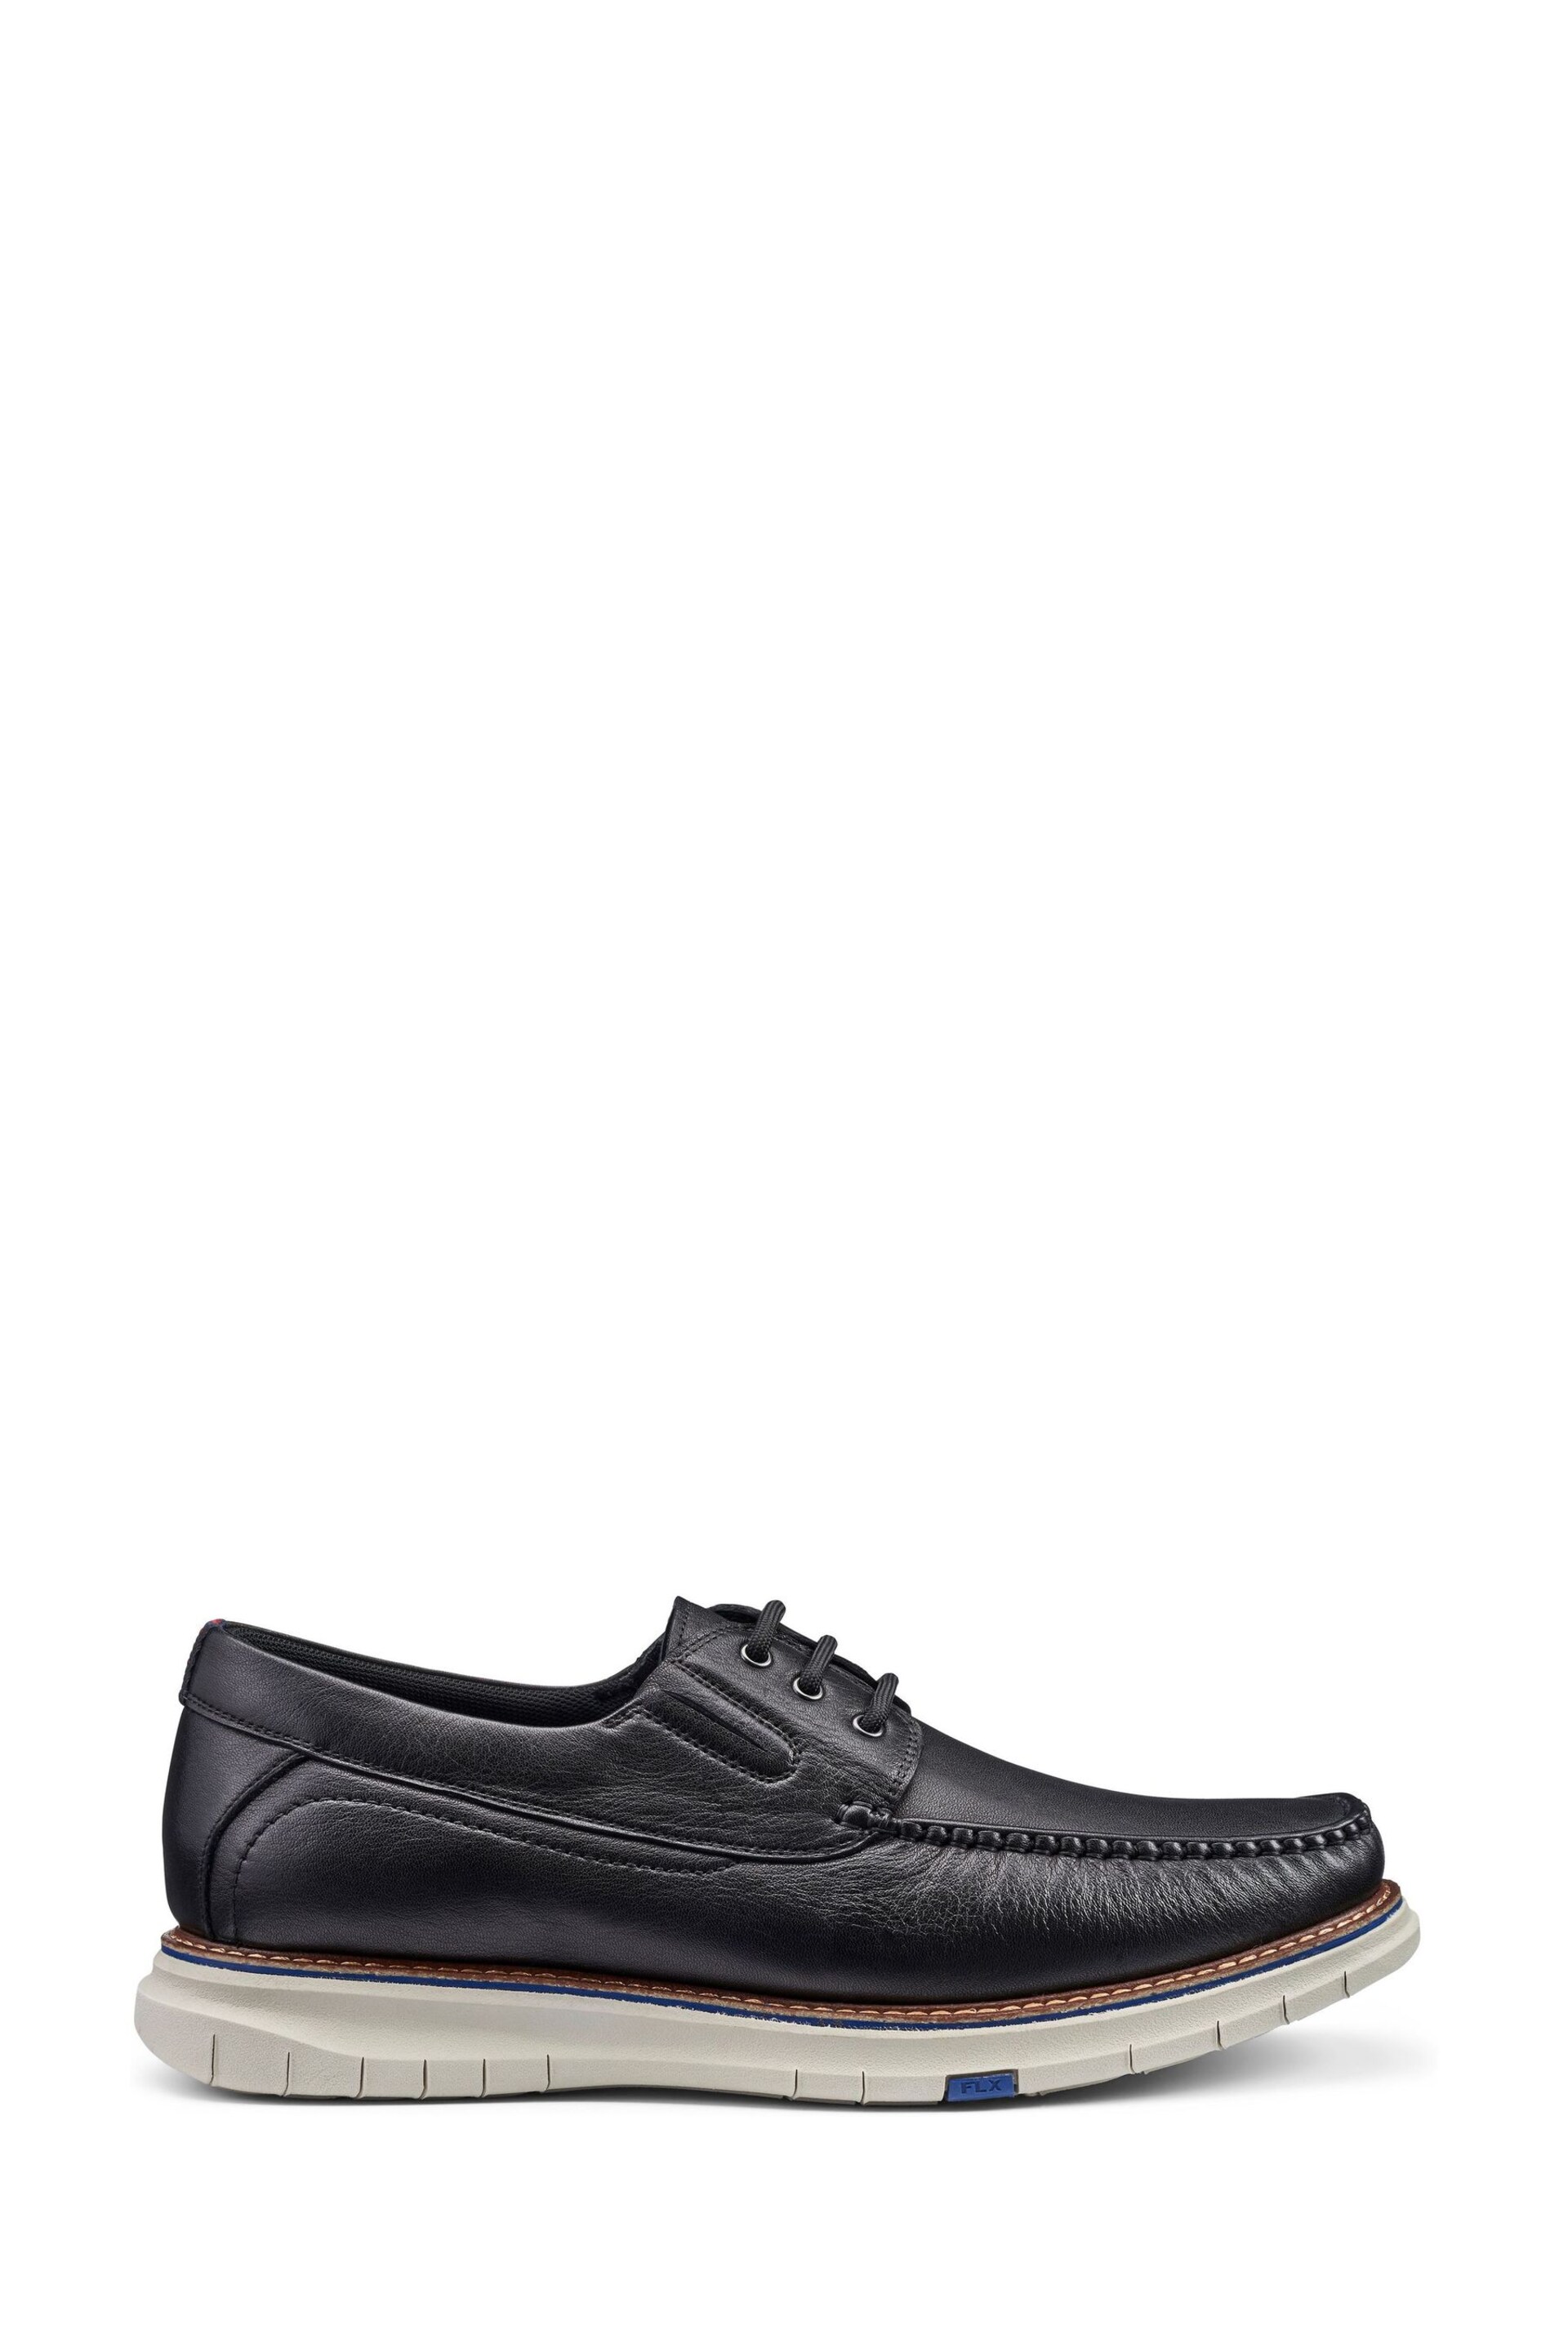 Hotter Black Port Lace-Up Regular Fit Shoes - Image 1 of 1